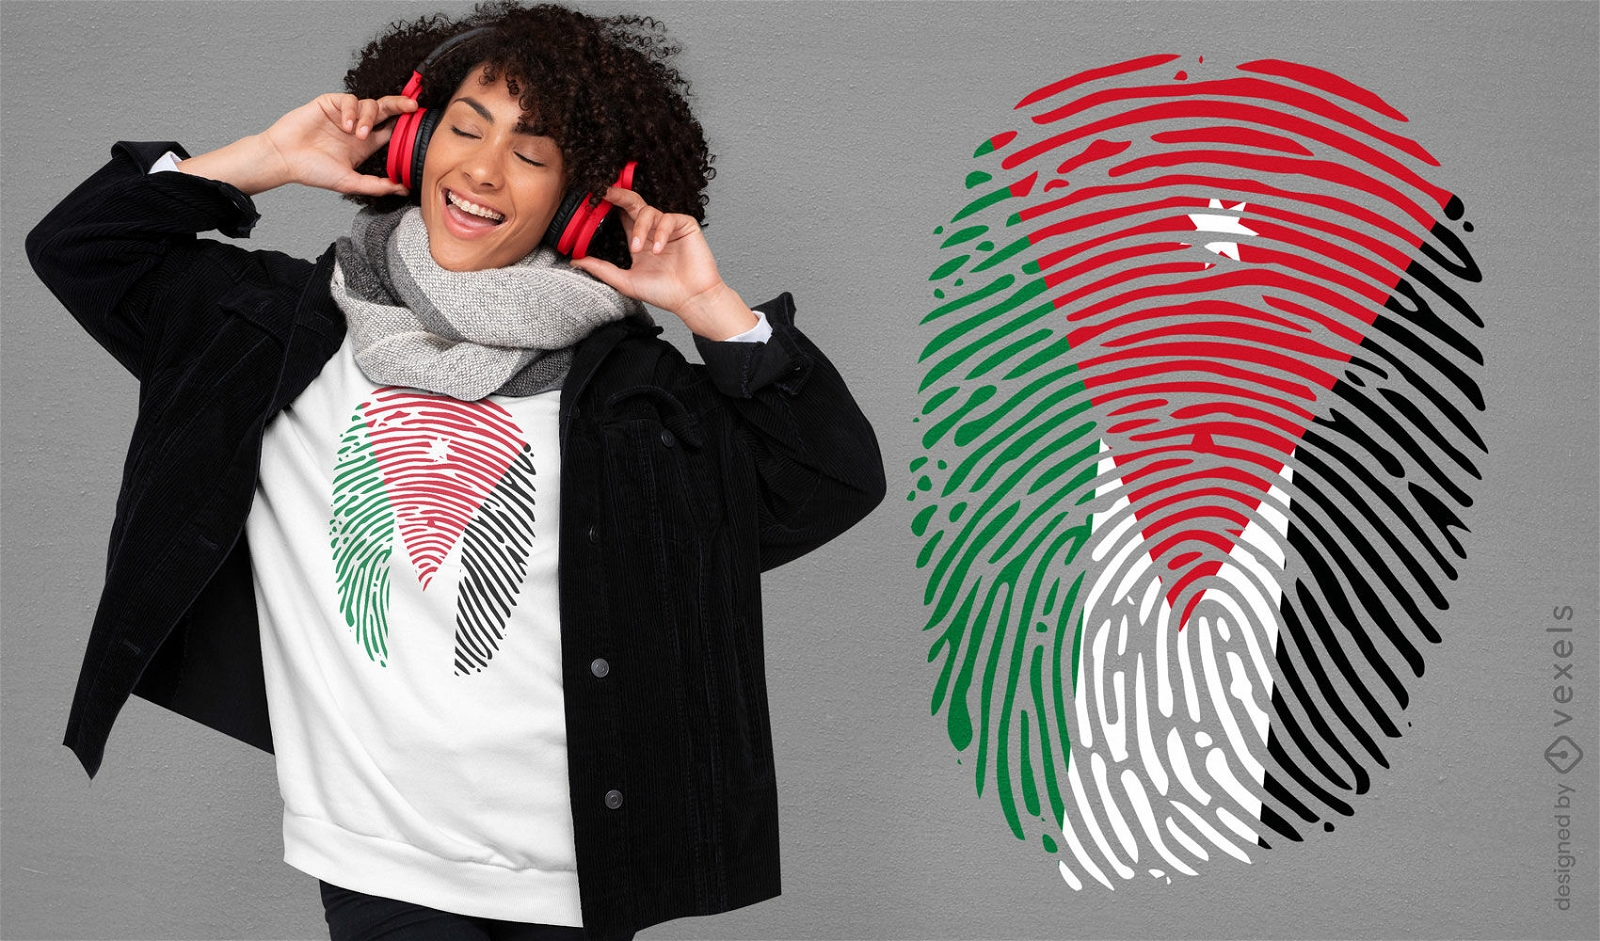 Jordan-Flaggen-T-Shirt-Design mit Fingerabdrücken